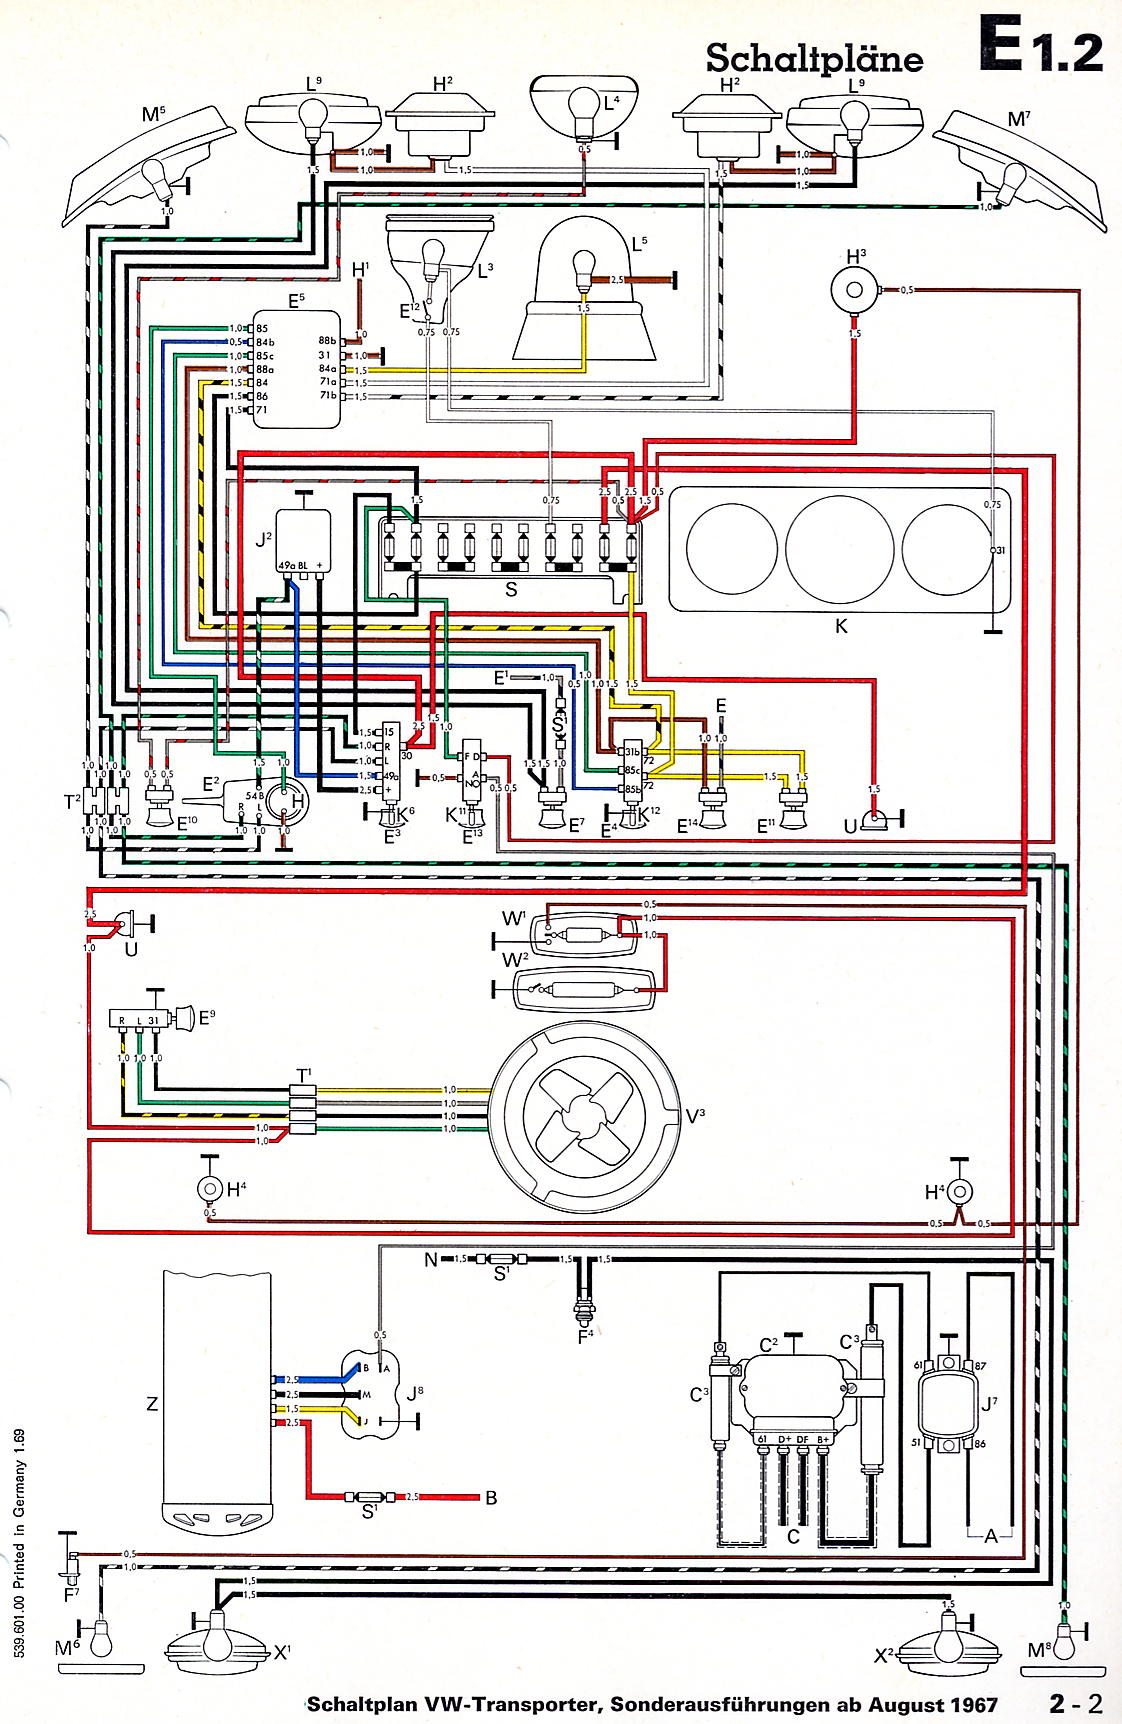 Bus Schaltpläne john deere tractor ignition switch wiring diagram free download 